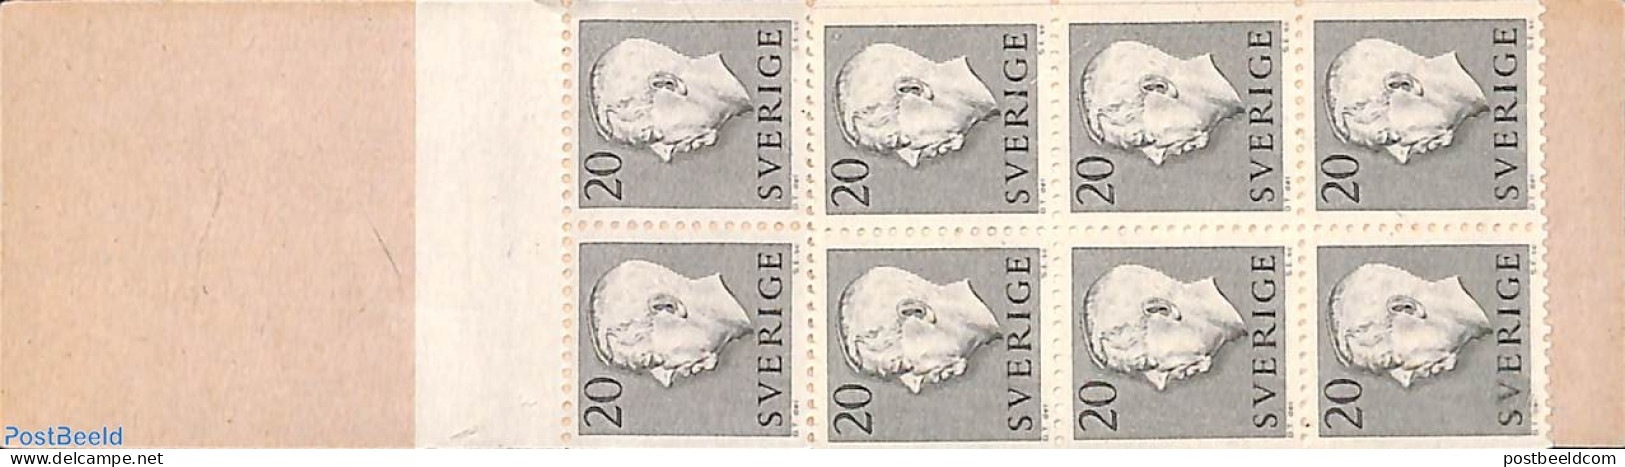 Sweden 1957 Definitives 20o Booklet, Mint NH - Unused Stamps